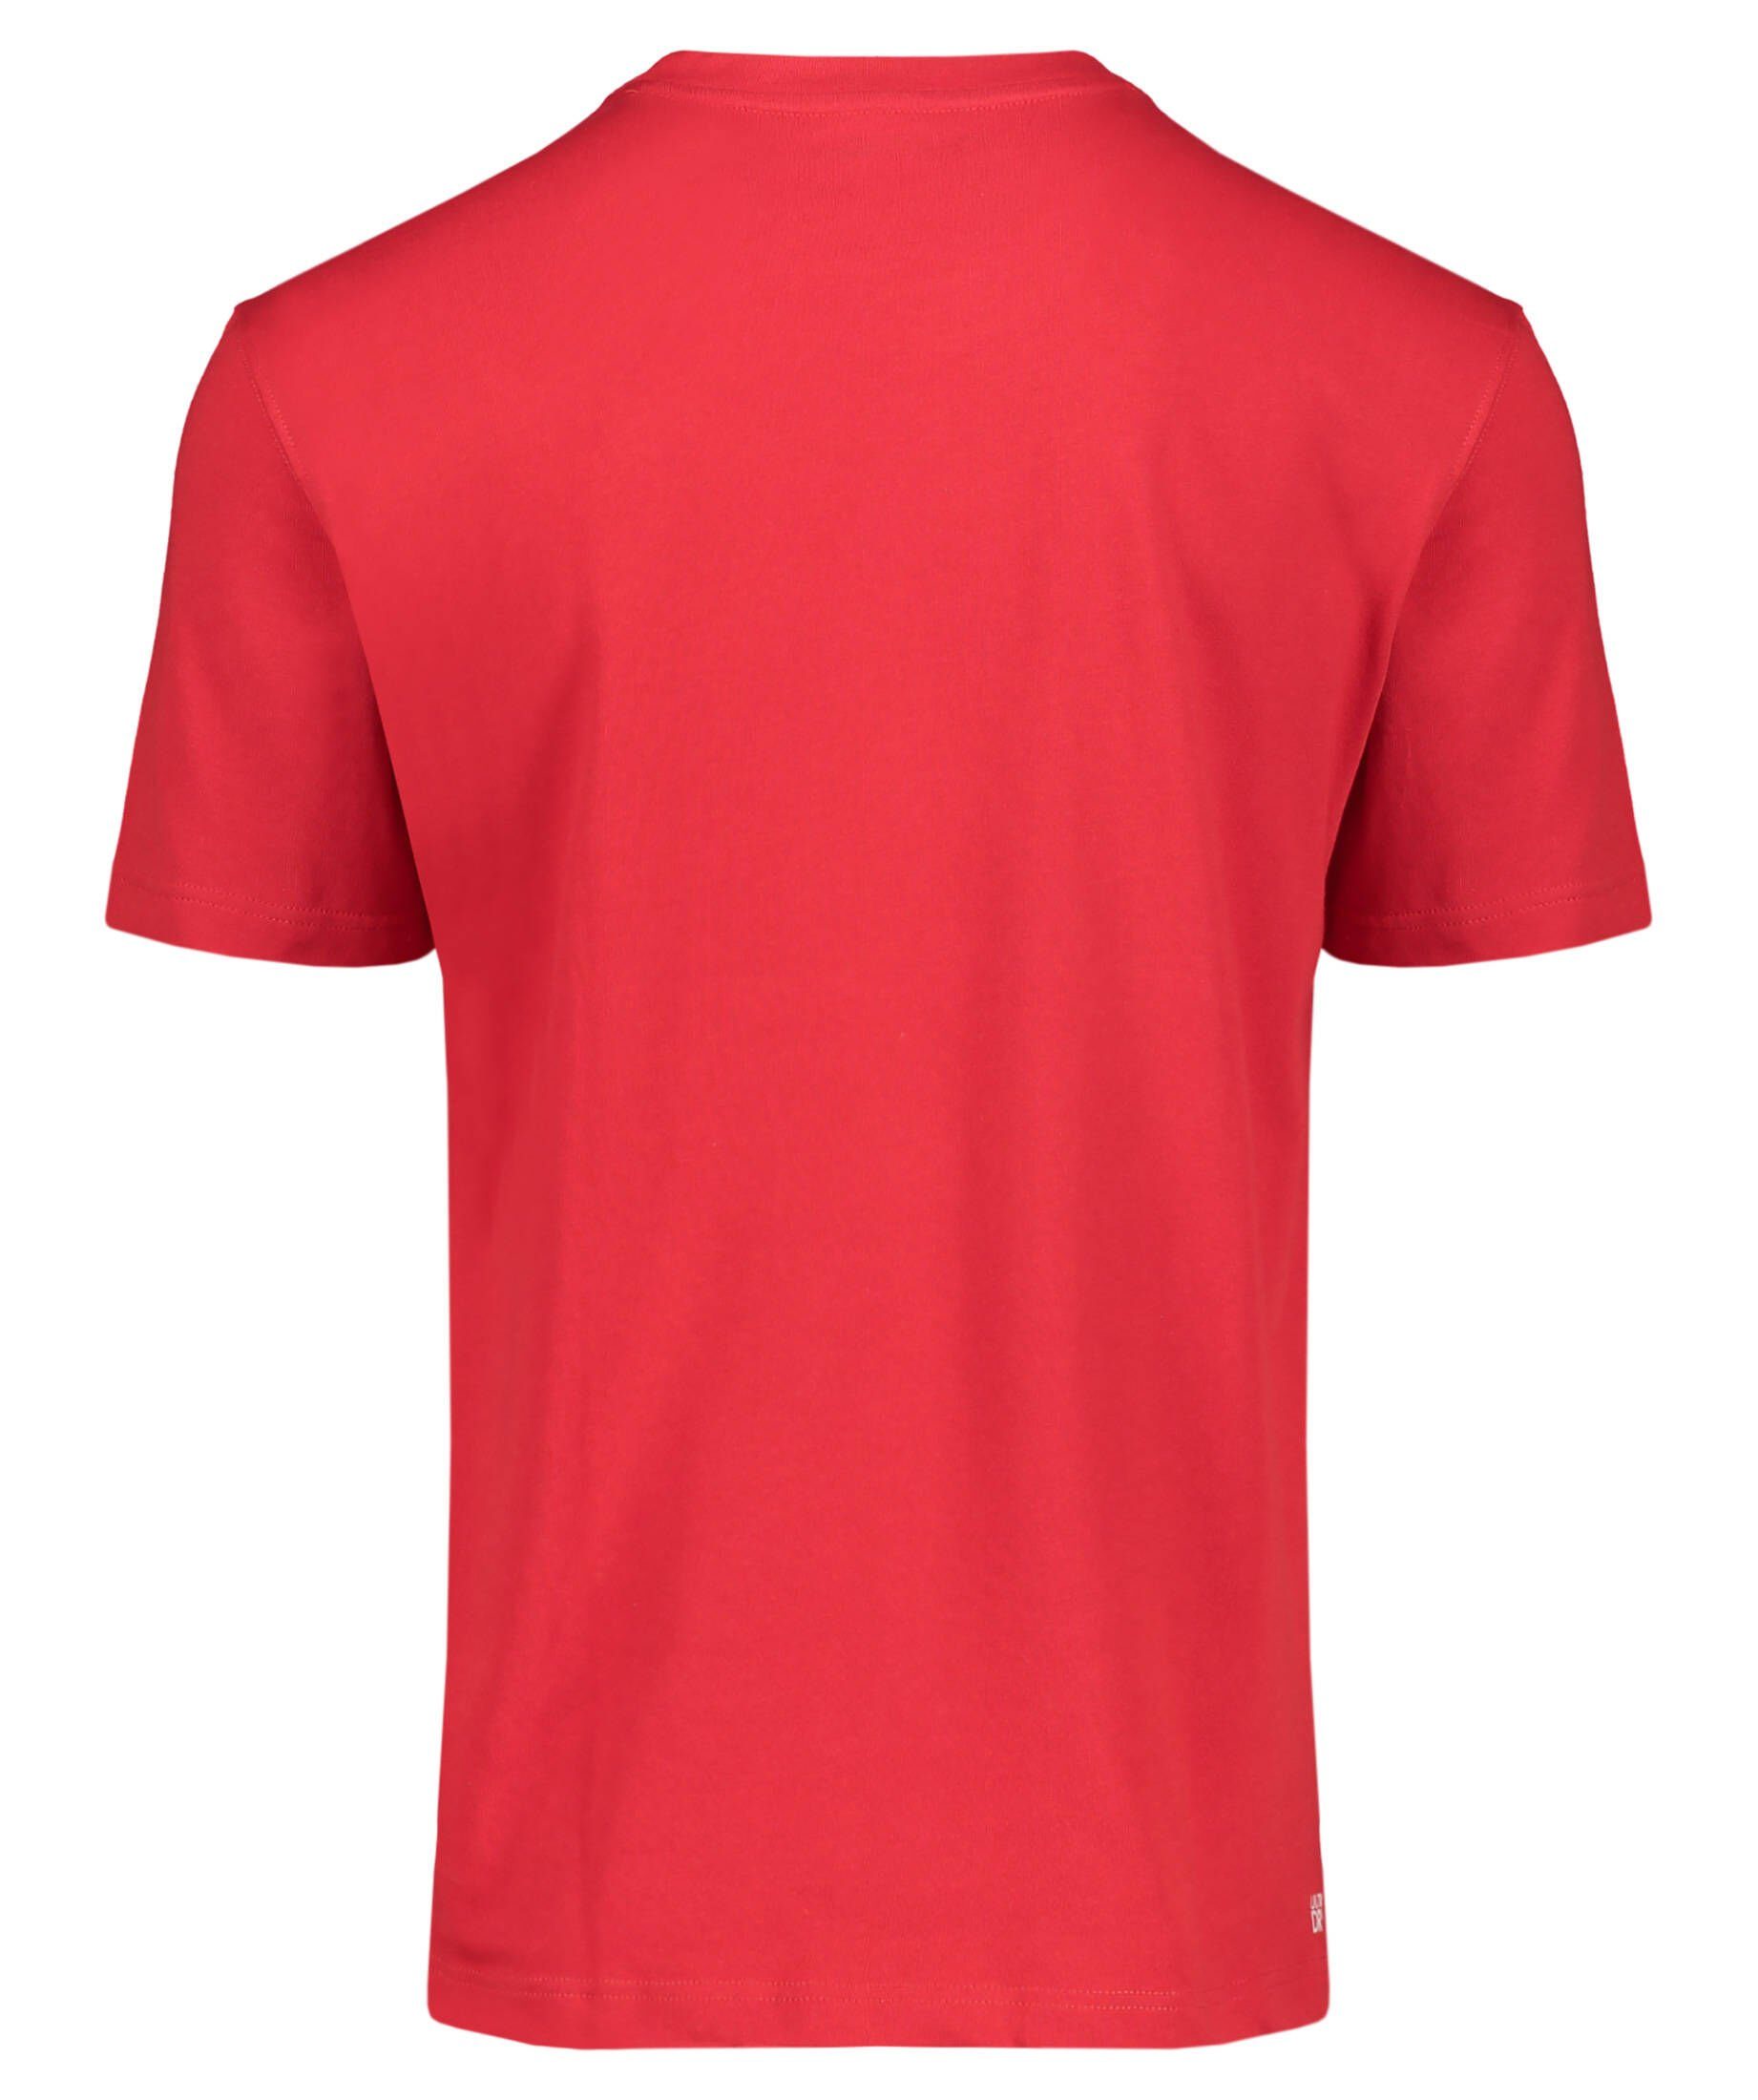 Lacoste Sport TEE-SHIRT Herren rot Tennisshirt (500) Tennisshirt